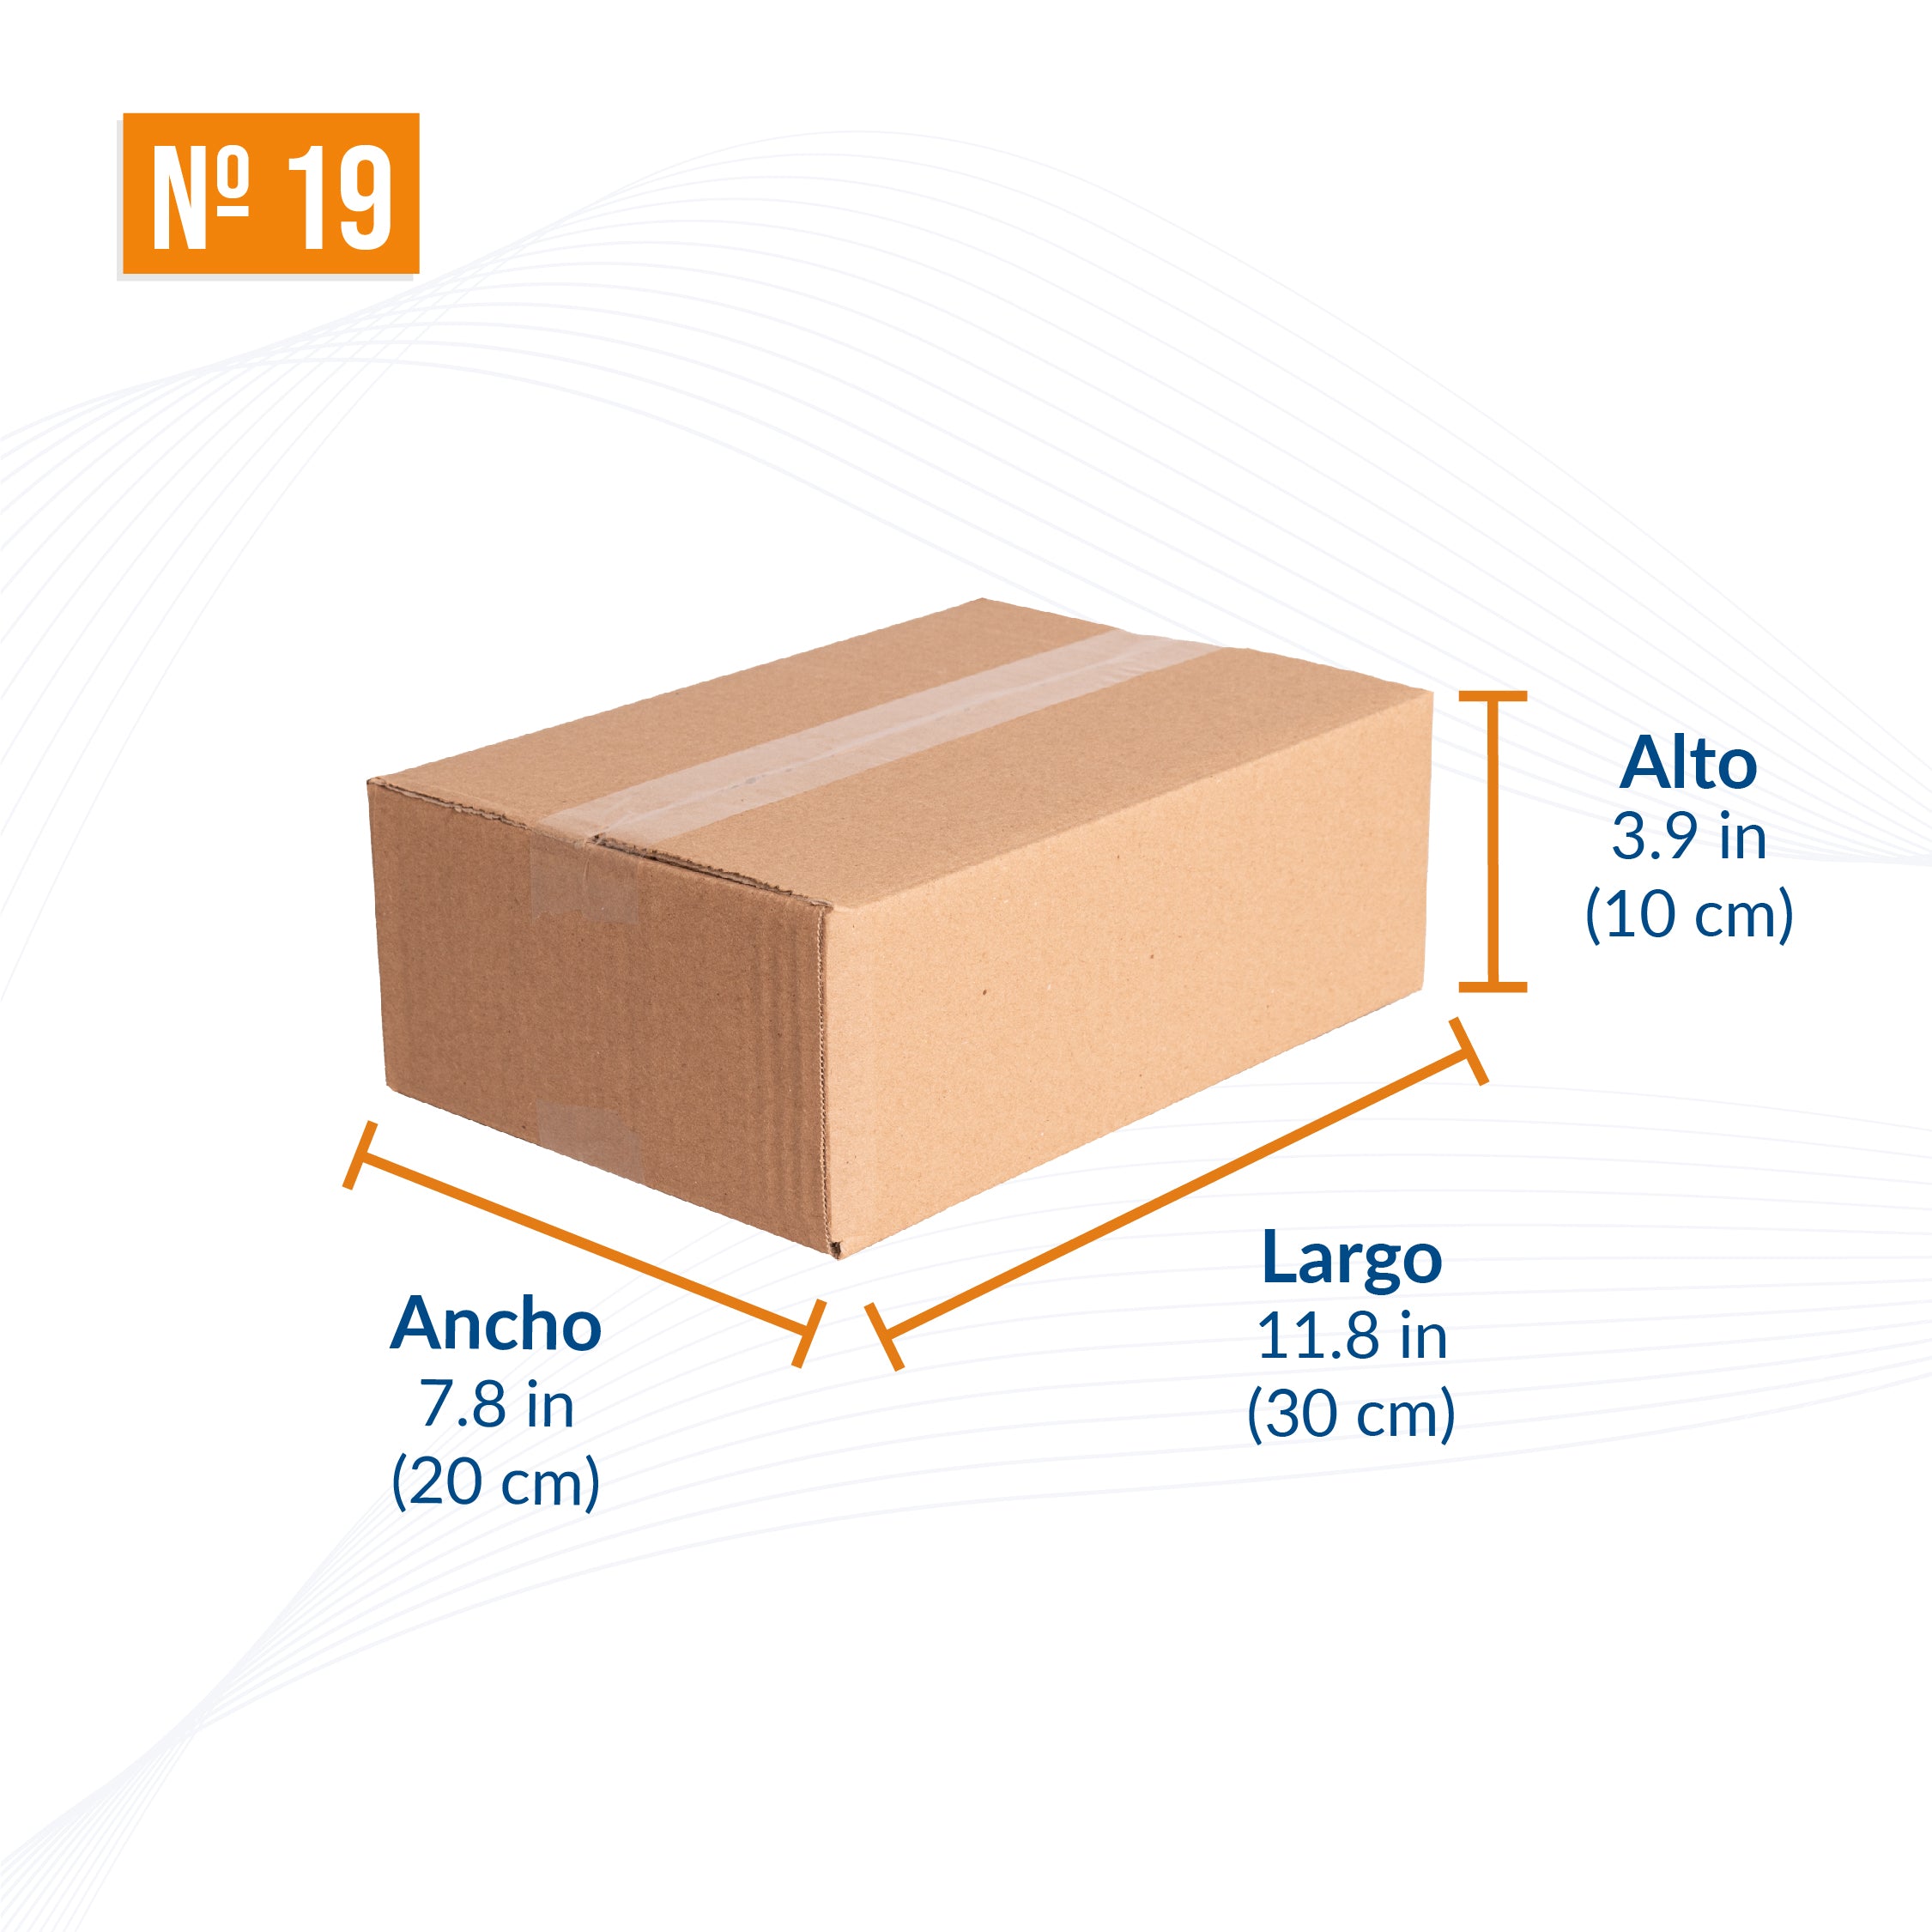 Caja Cartón 19x10x6 cm Automontable con Tapa - Cajas y Precintos